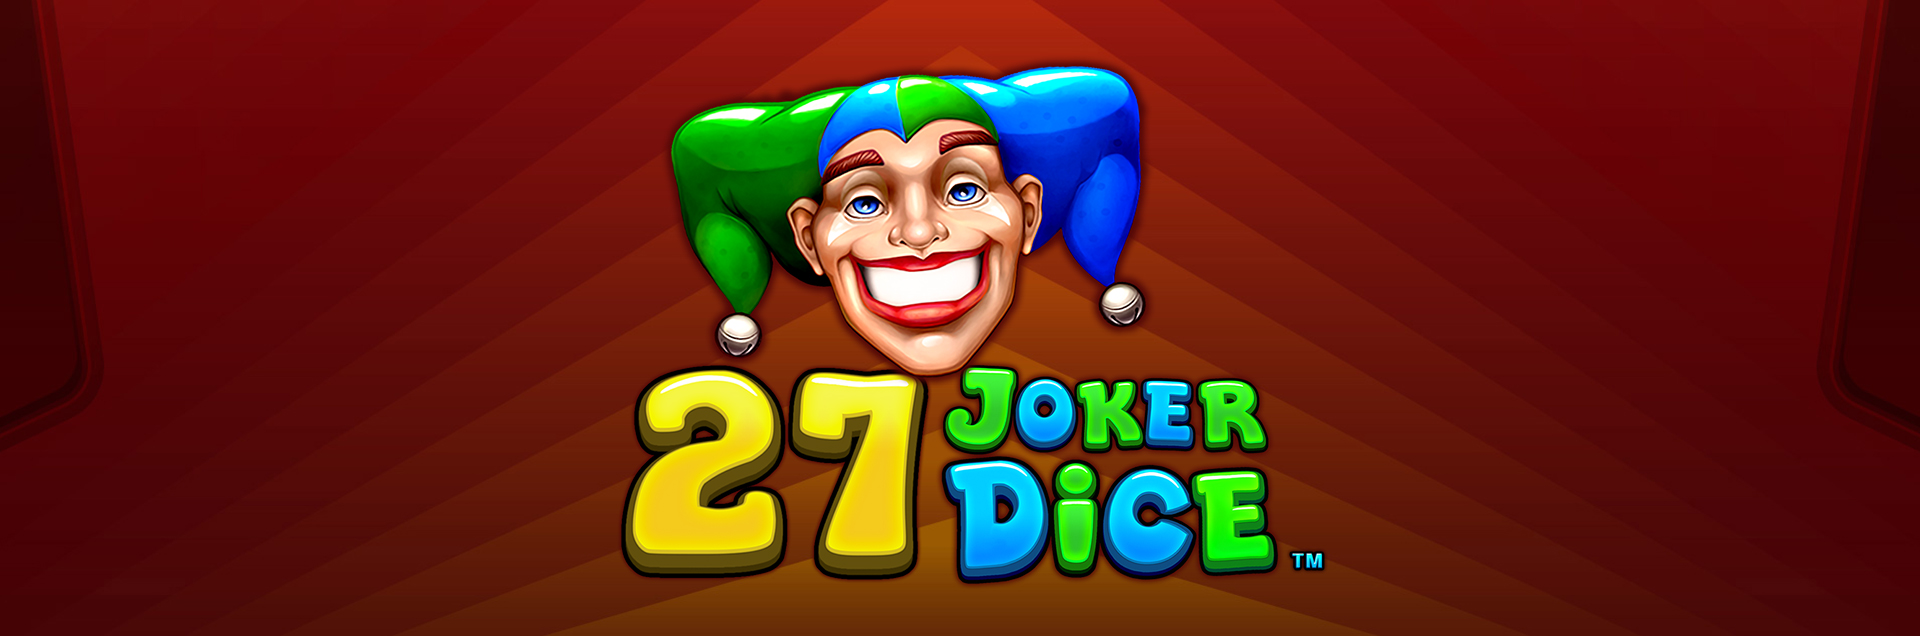 27 Joker Dice header games